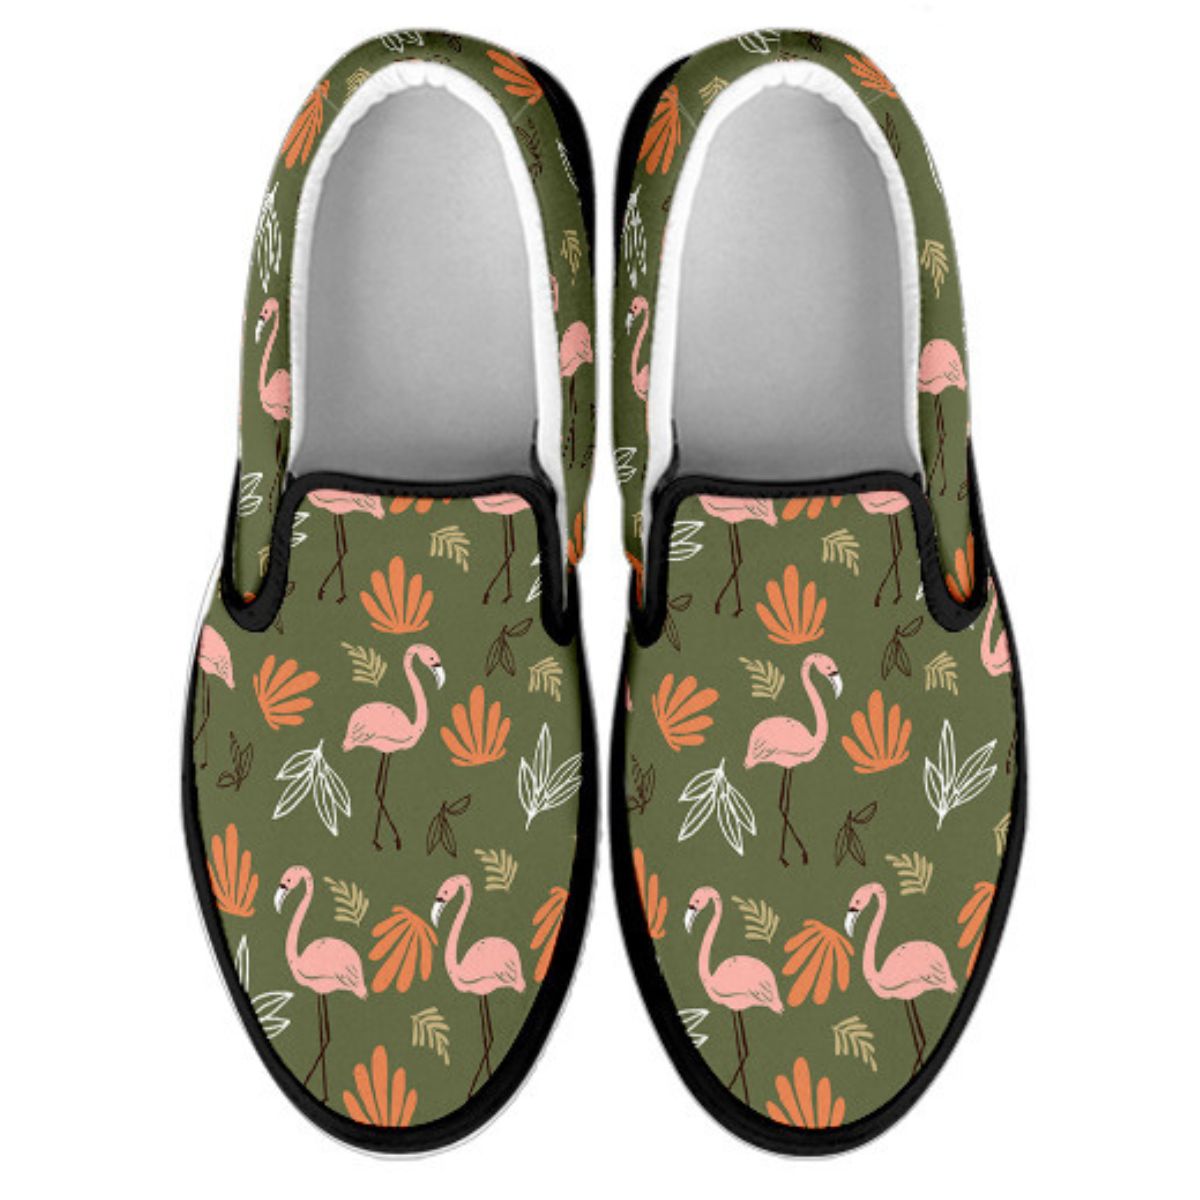 flamingo shoes slip on